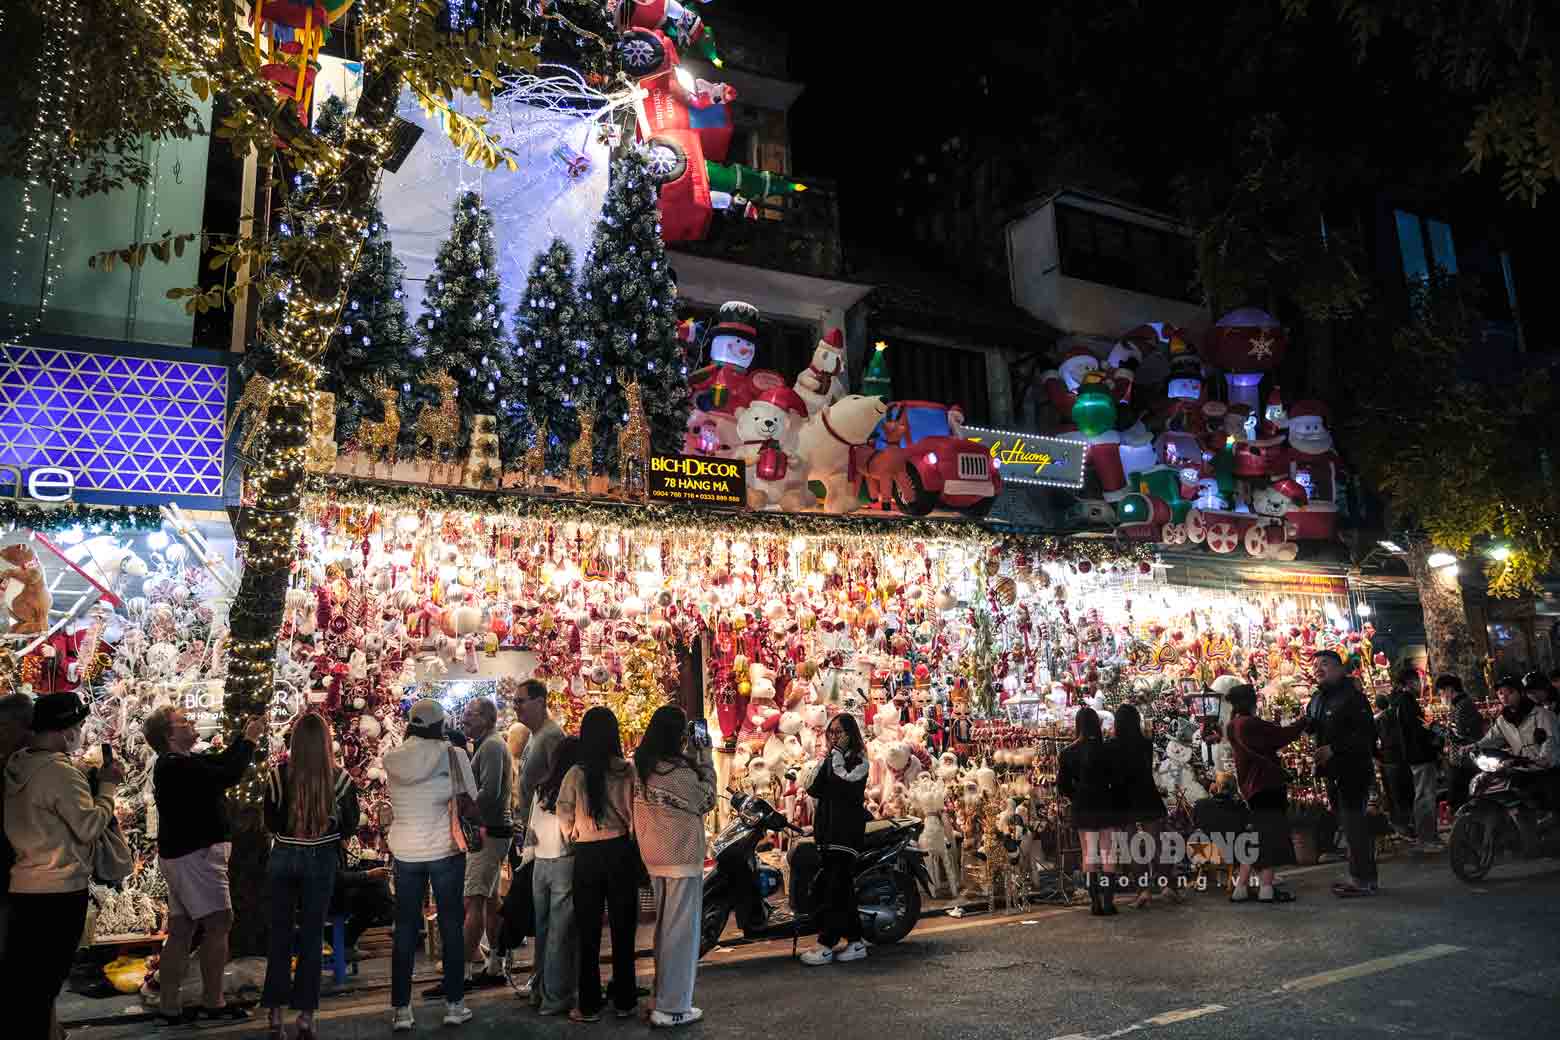  Cửa hàng Bích decor nằm ở đầu phố Hàng Mã, thu hút nhiều nhất các bạn trẻ bởi sự độc lạ và đa dạng các những mặt hàng trang trí Giáng sinh mỗi năm.